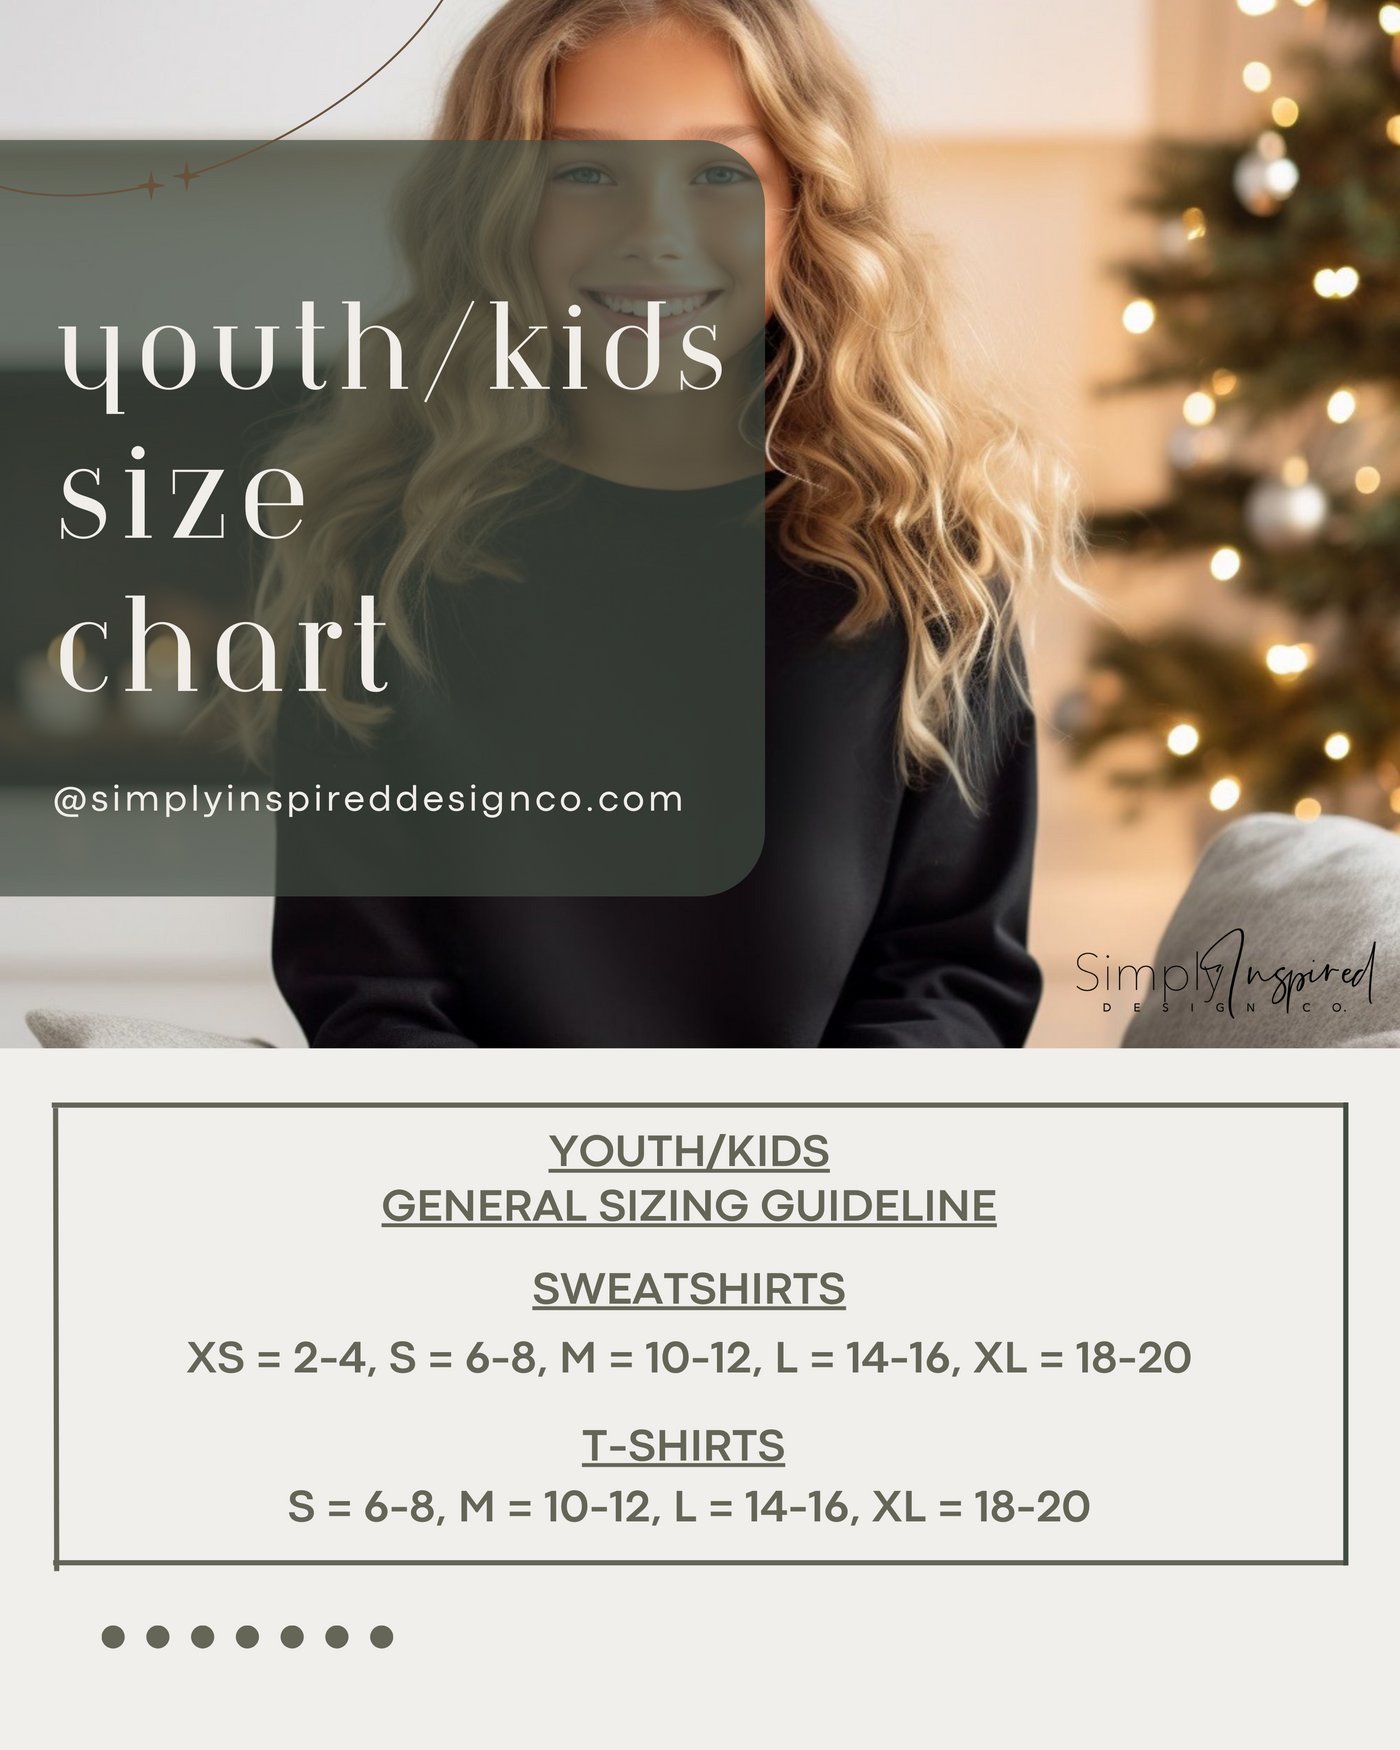 YOUTH/KIDS  Santa BabyT-Shirt